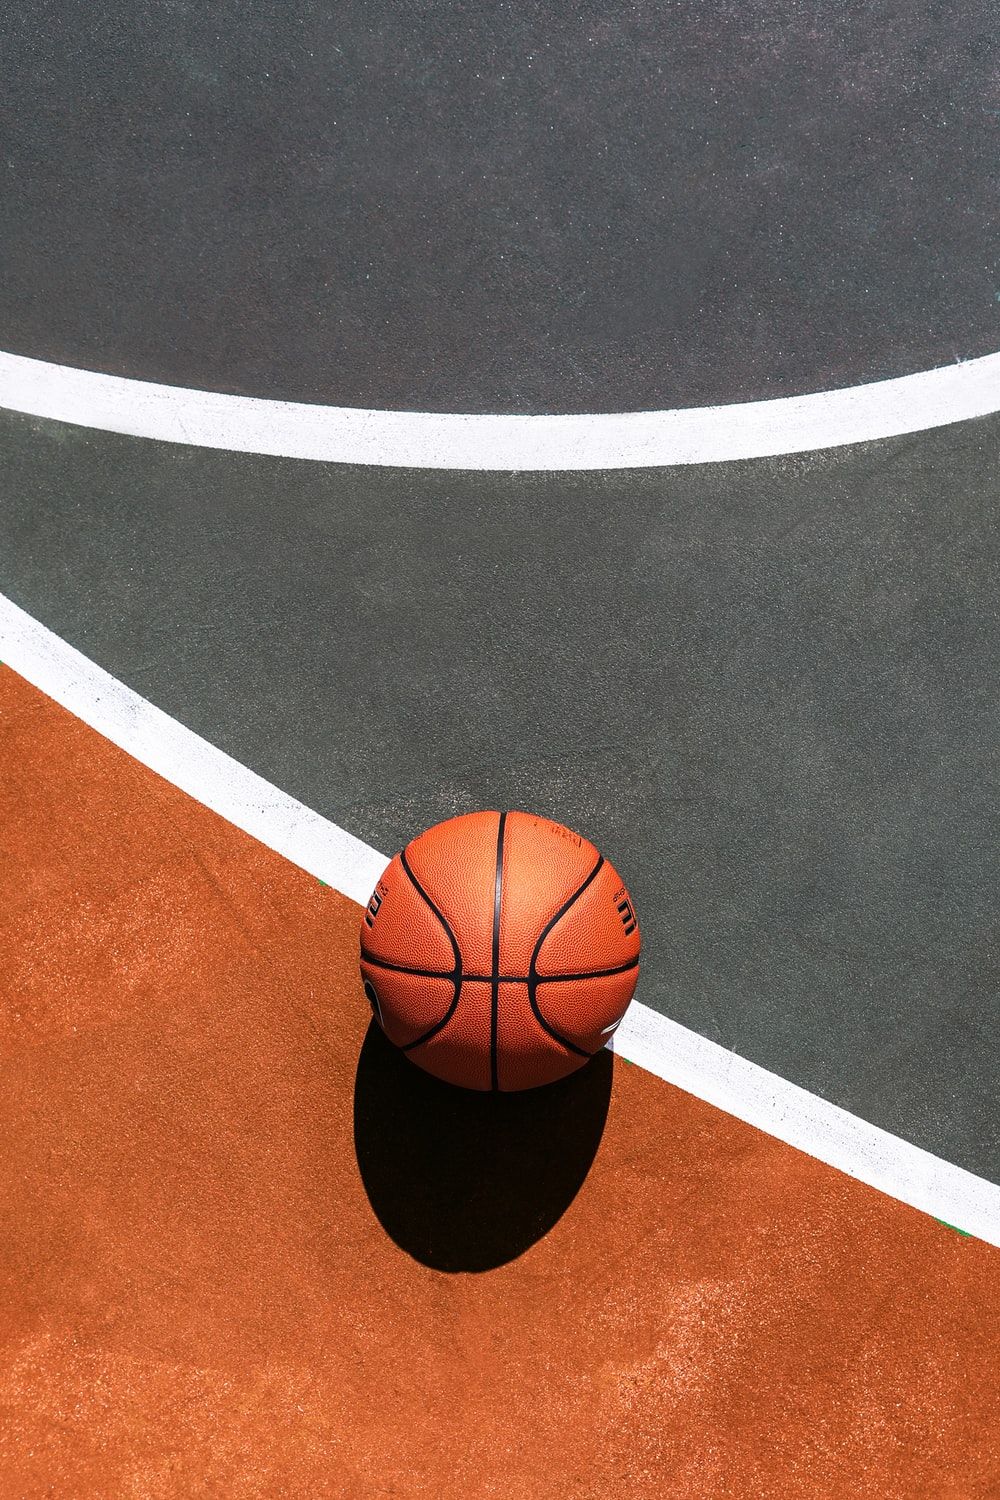 Basketball Ball Is Life Wallpapers on WallpaperDog